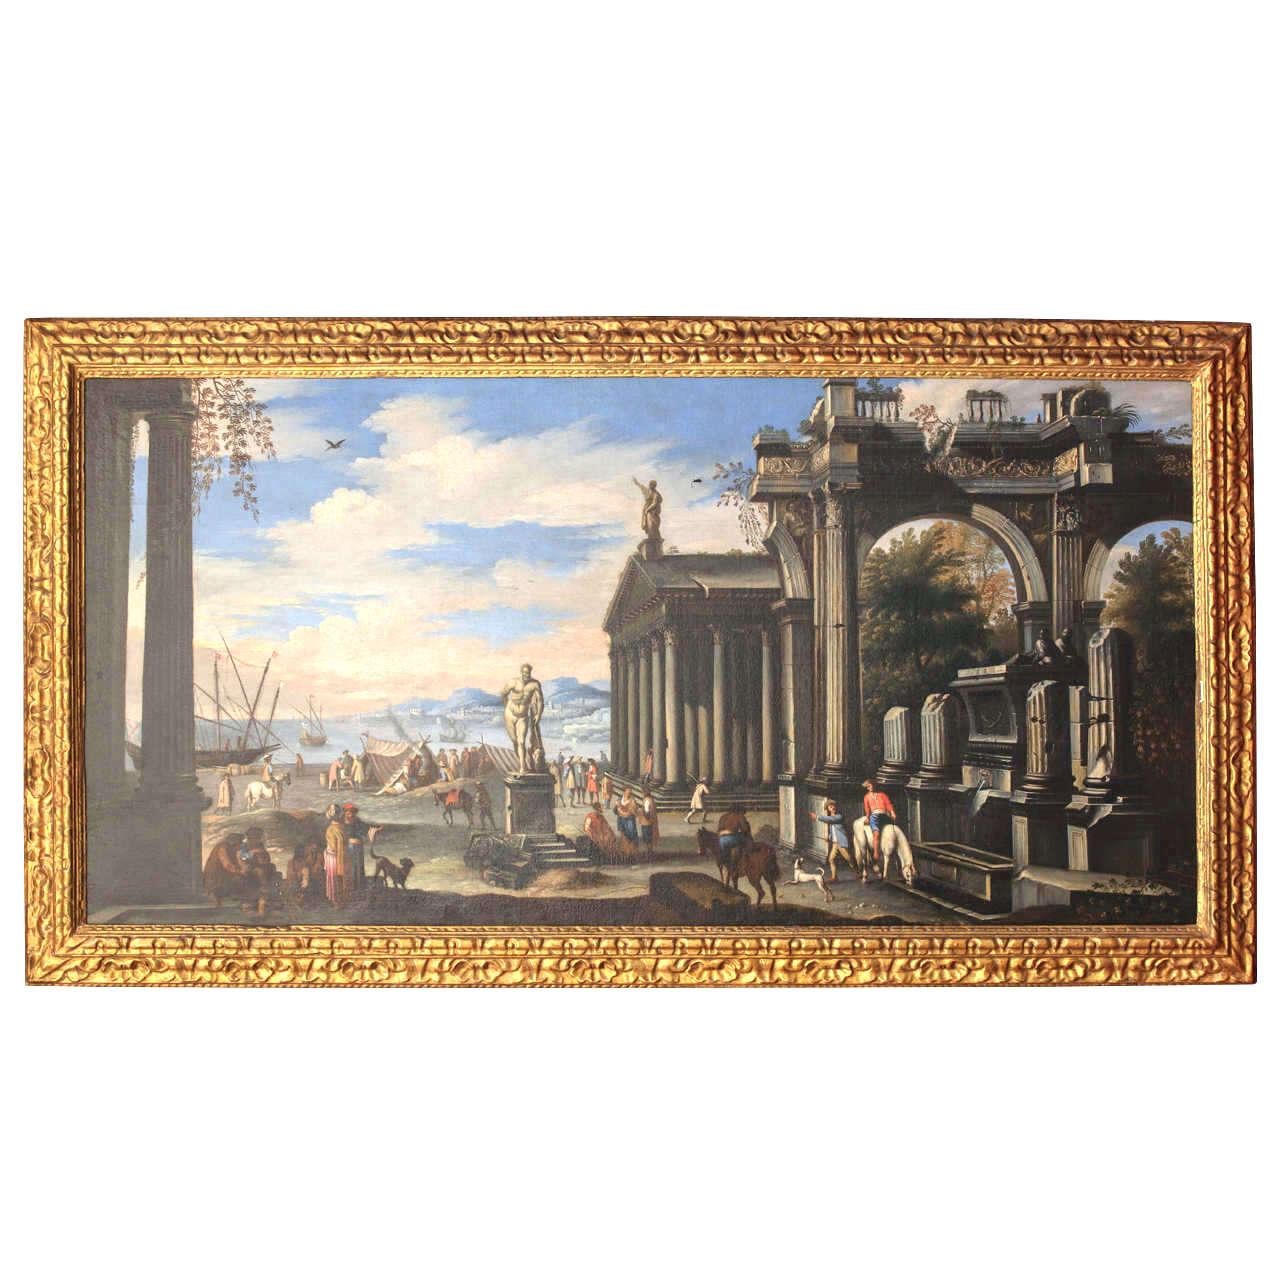 Giovanni Ghisolfi Landscape Painting – Capriccio - 17. Jahrhundert Öl auf Leinwand Klassische Architekturruinenmalerei